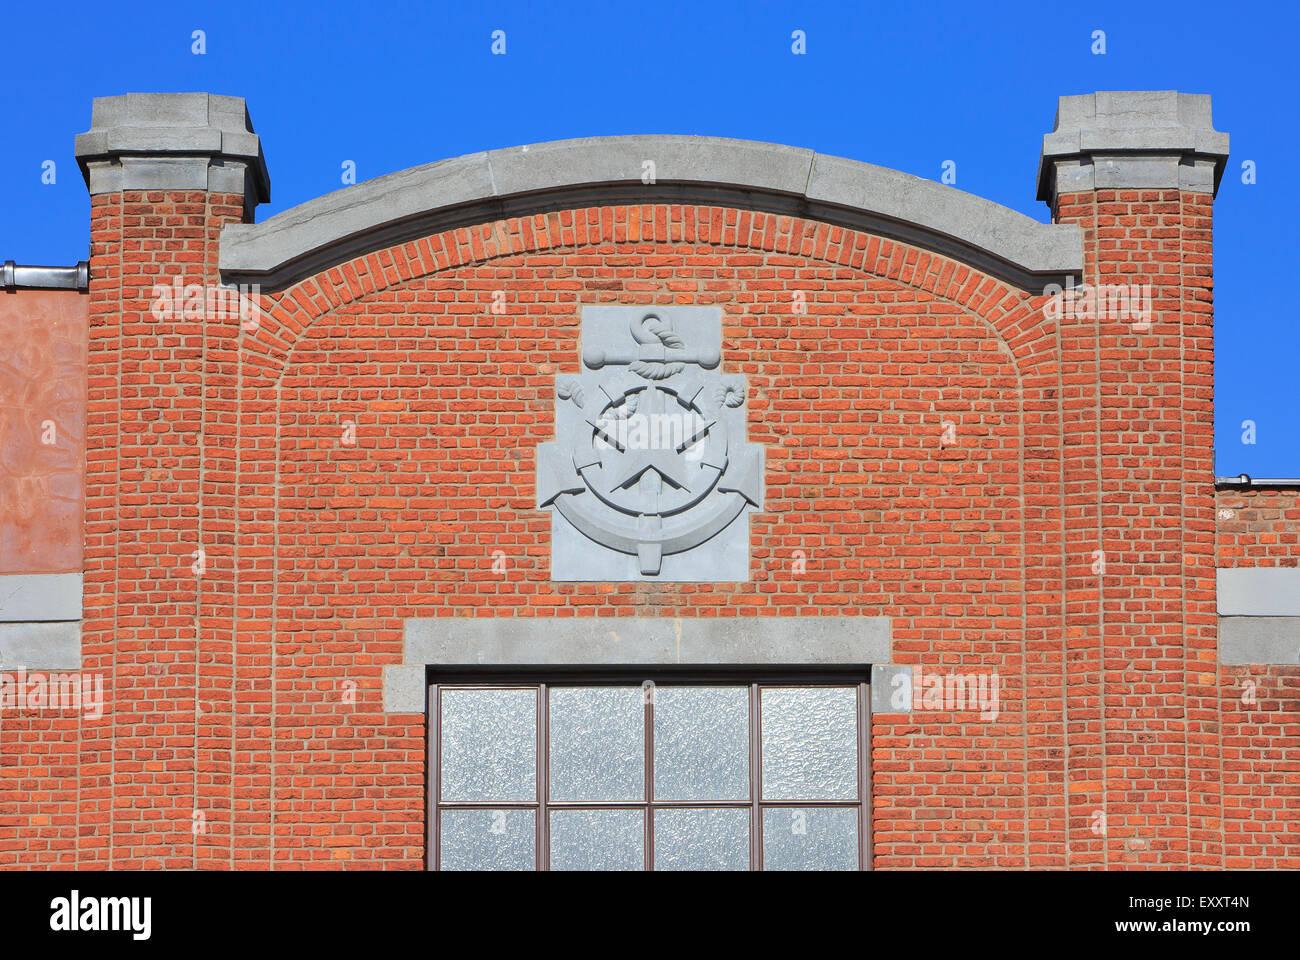 Dettaglio facciata della Red Star Line museo di Anversa, Belgio Foto Stock